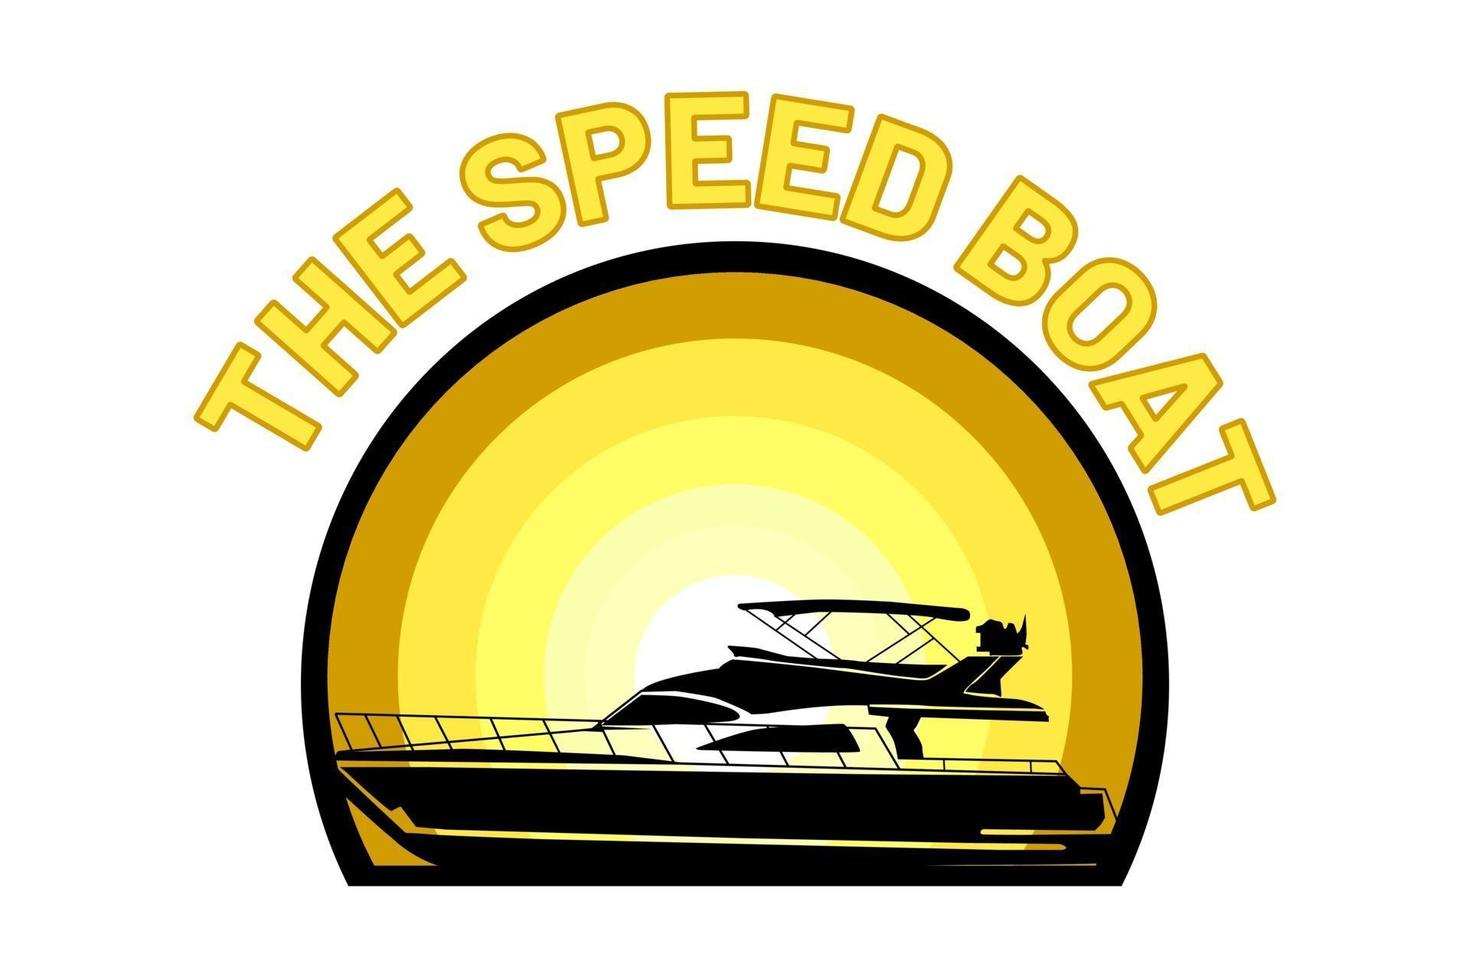 the speed boat silhouette retro design vector